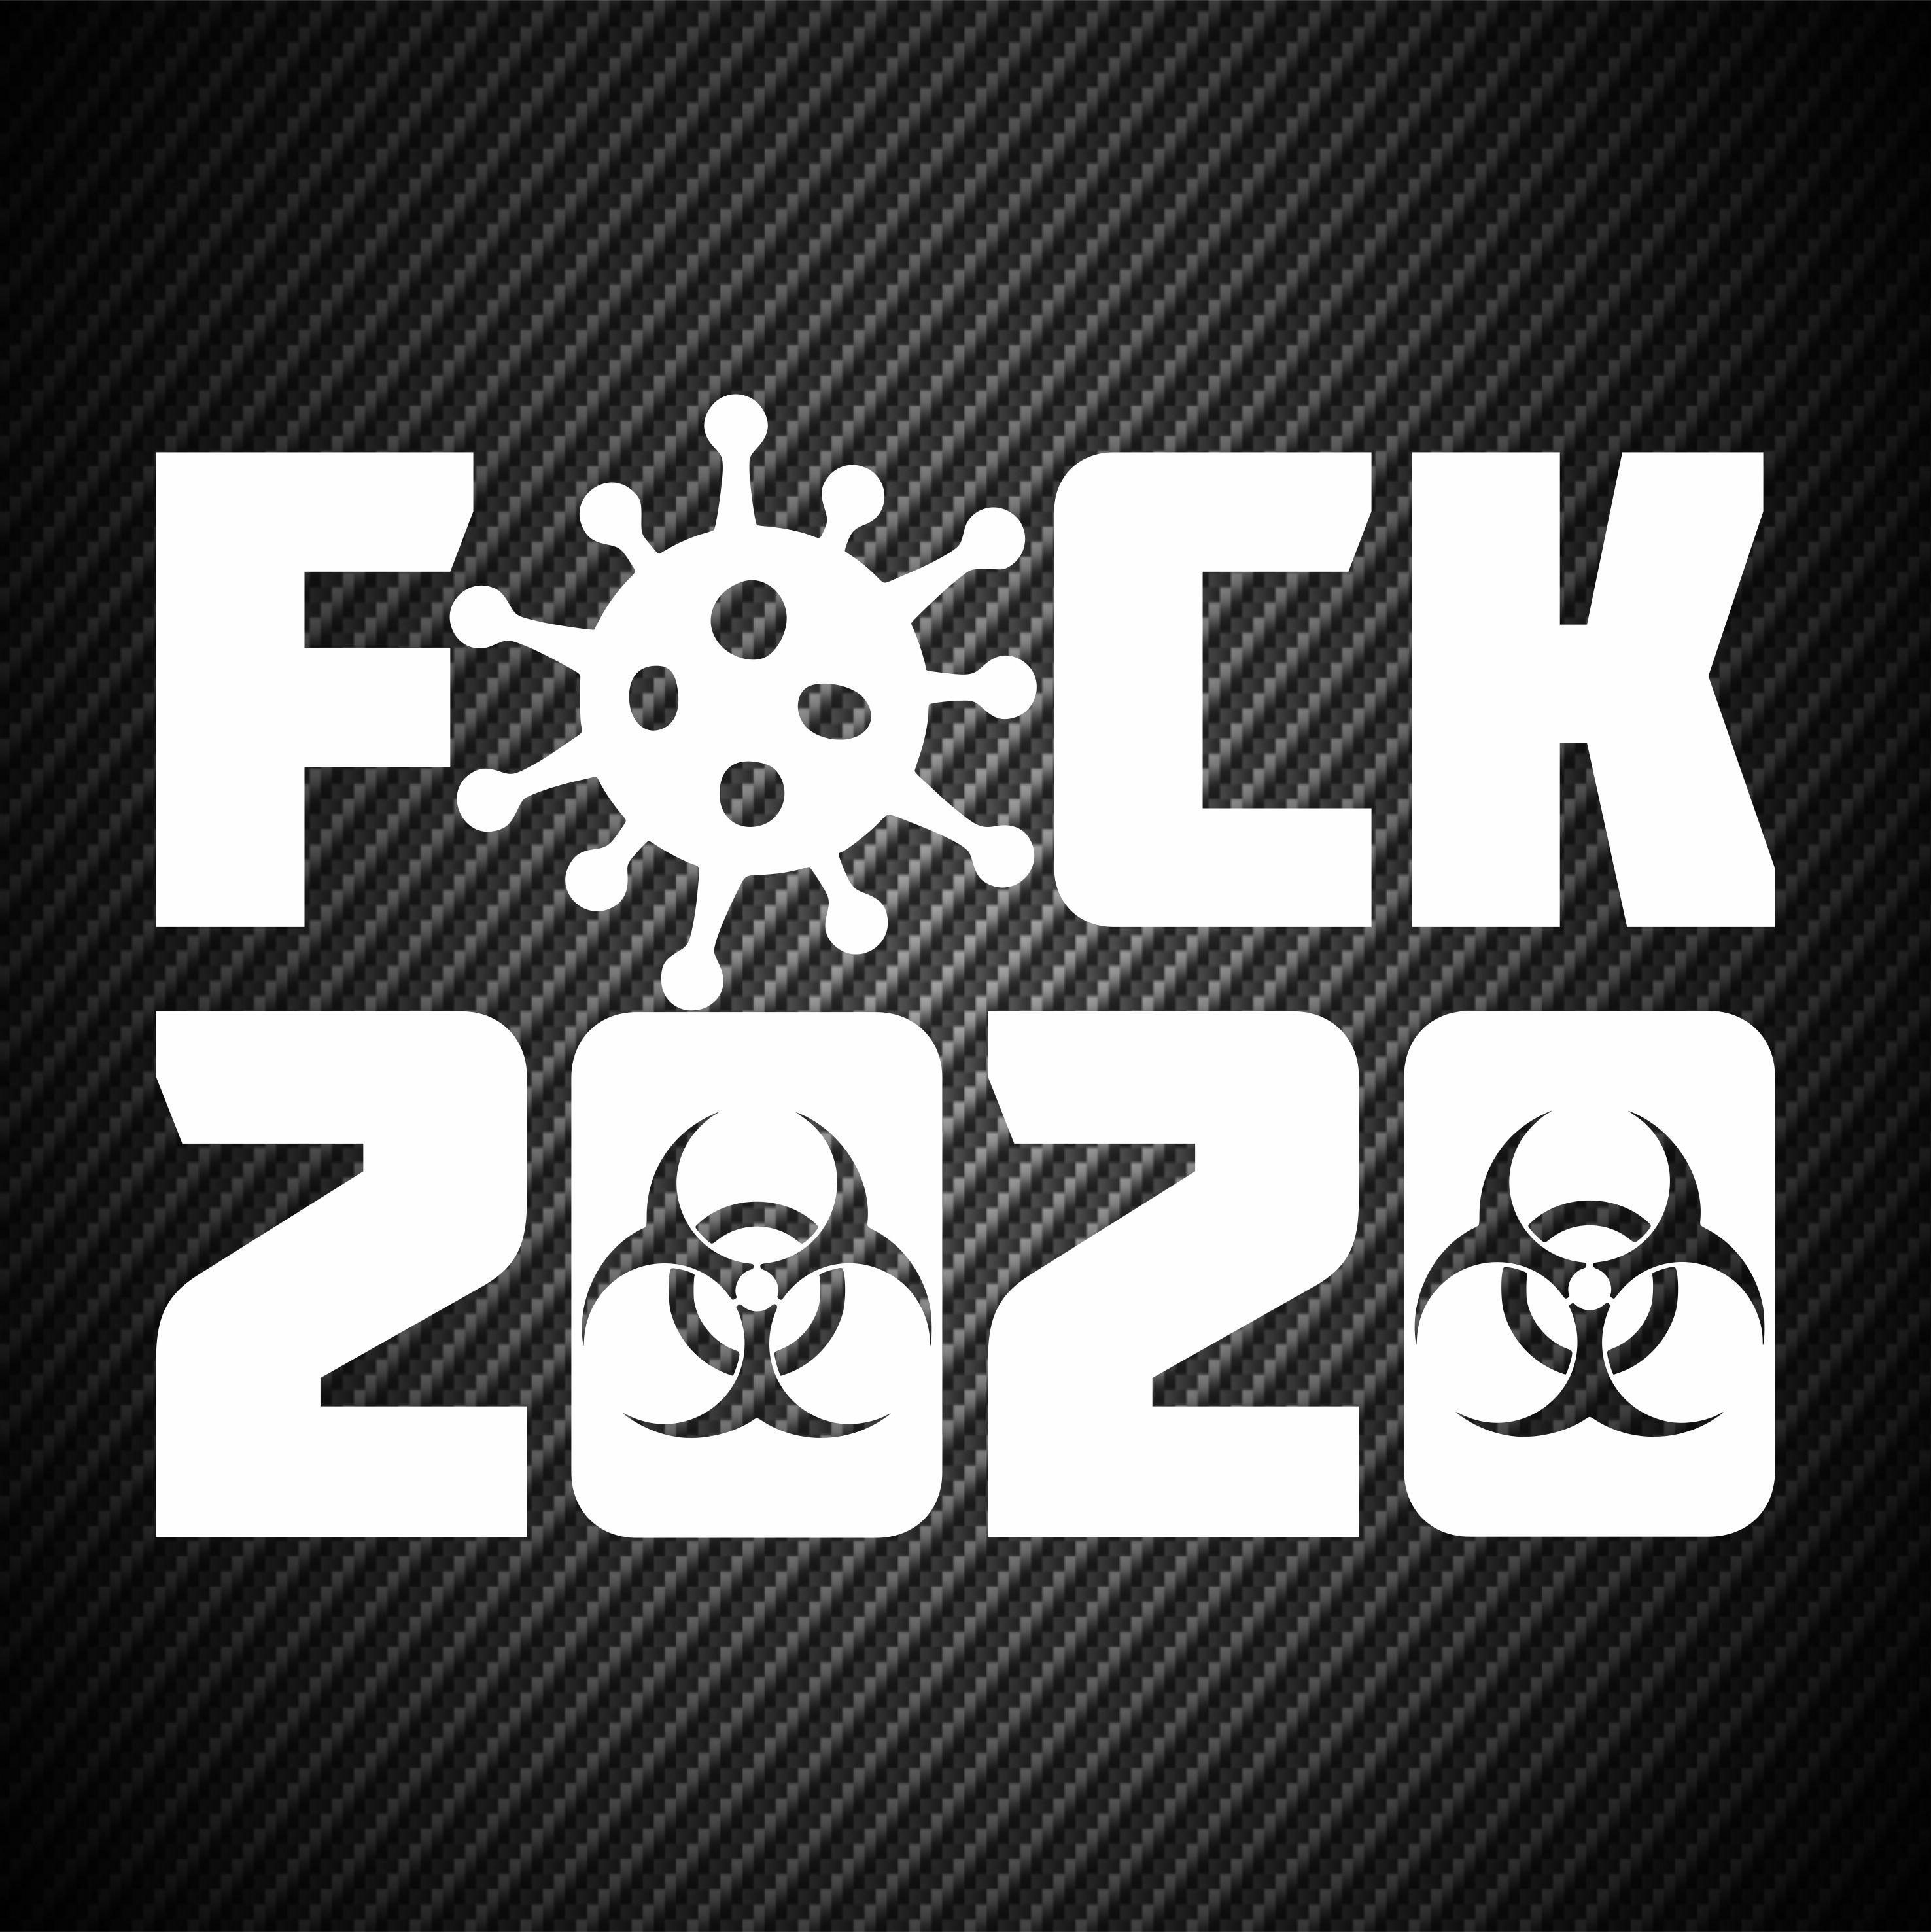 2020 The F**k-It List